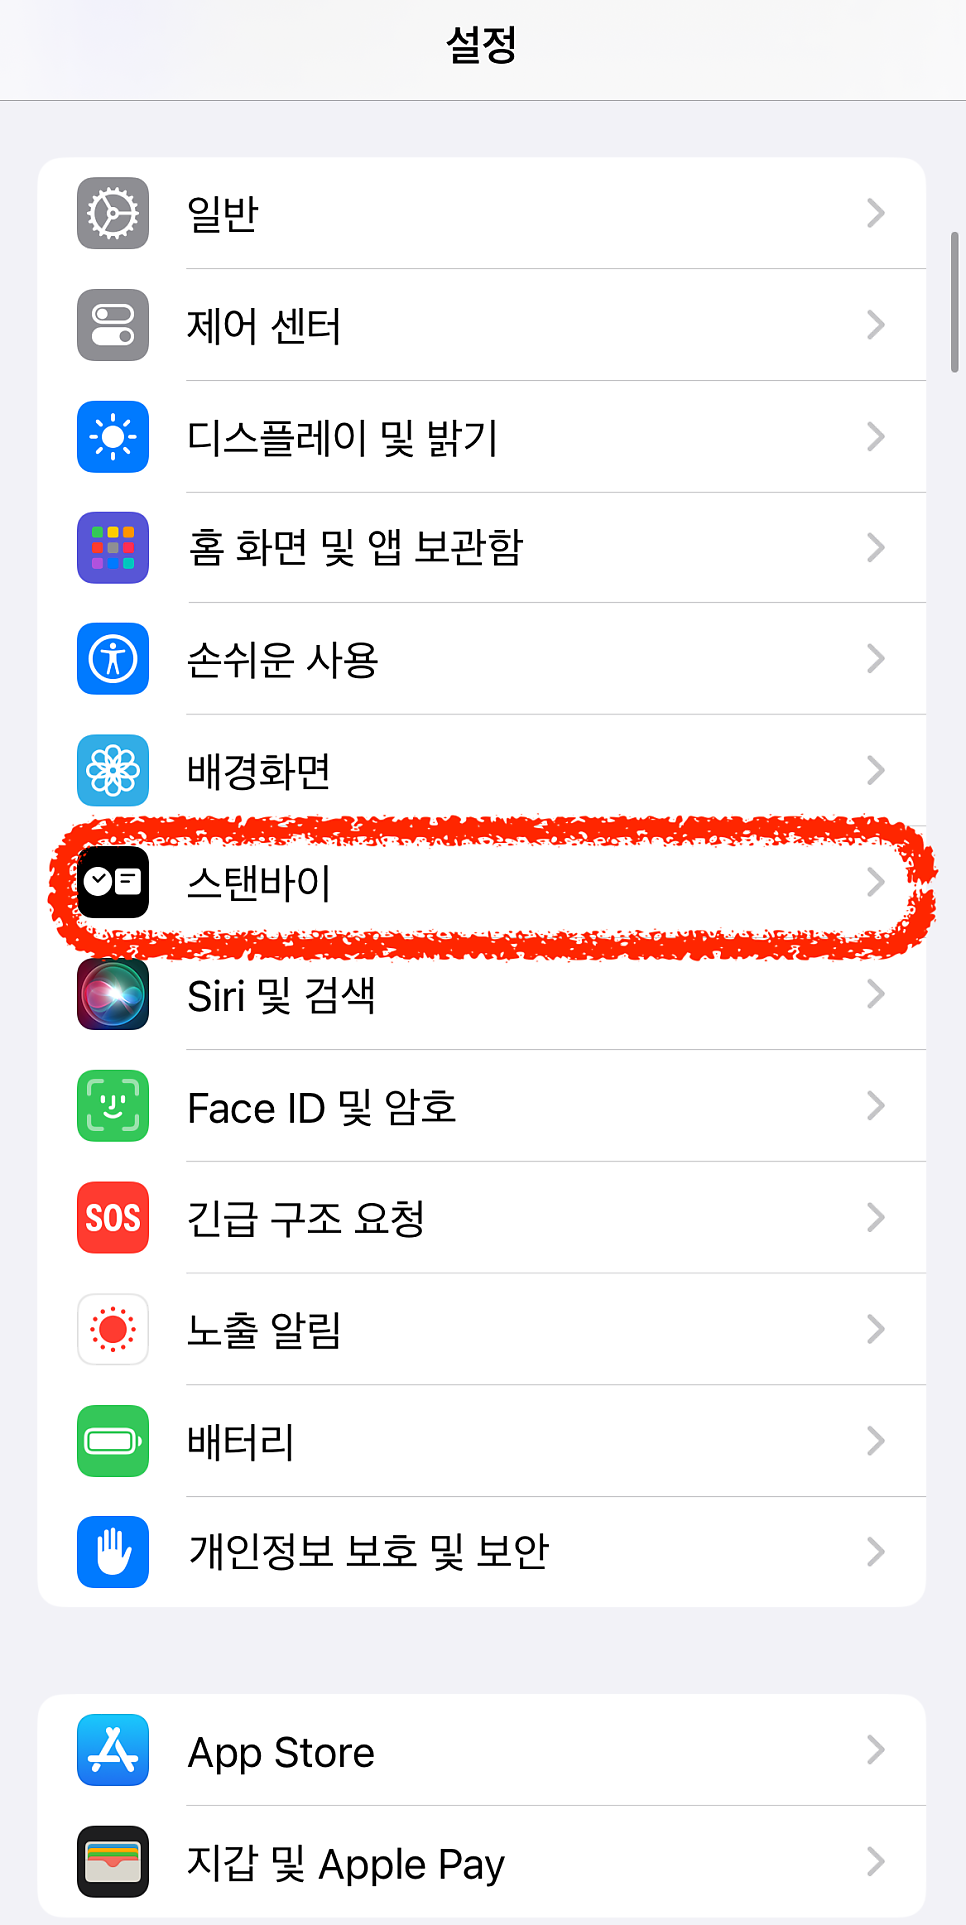 iOS17 아이폰 스탠바이 모드 설정, 화면 바꾸기, 위젯 추가/삭제 등 실행 사용법